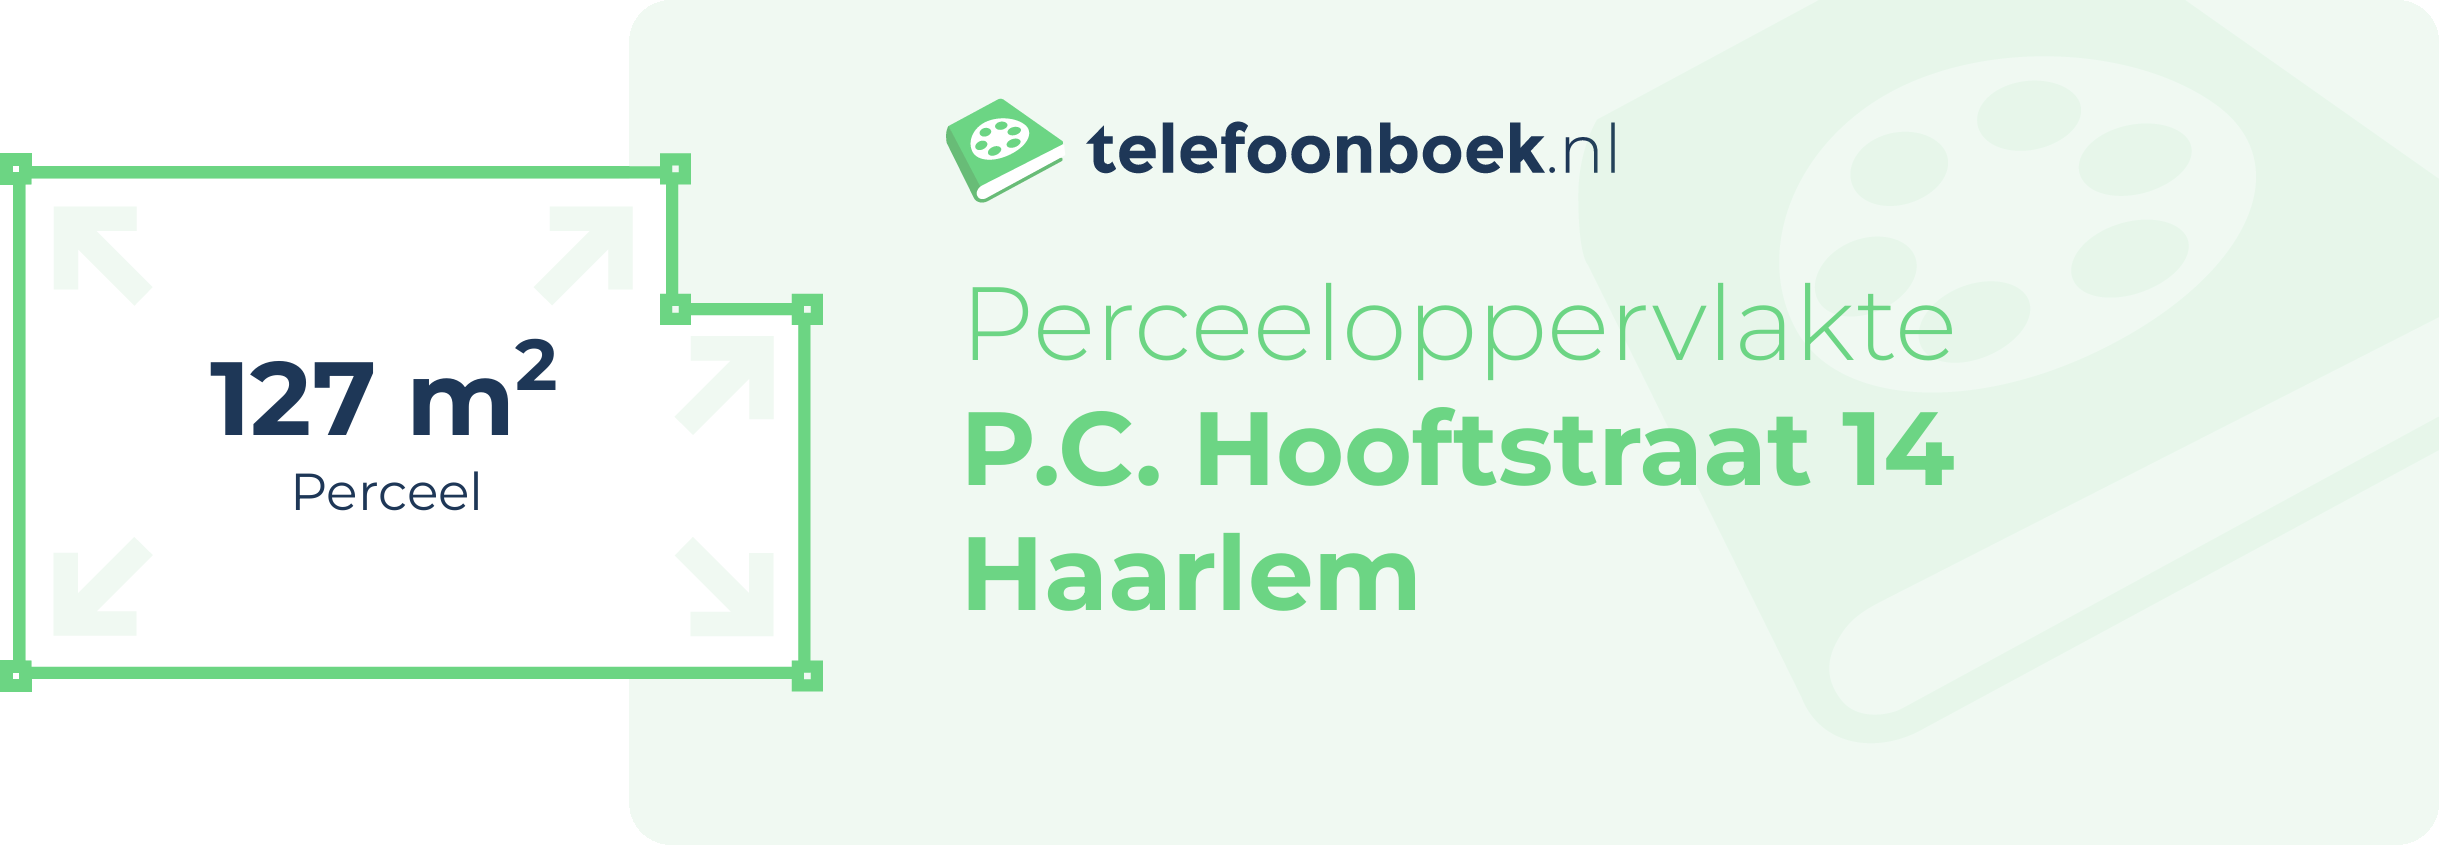 Perceeloppervlakte P.C. Hooftstraat 14 Haarlem